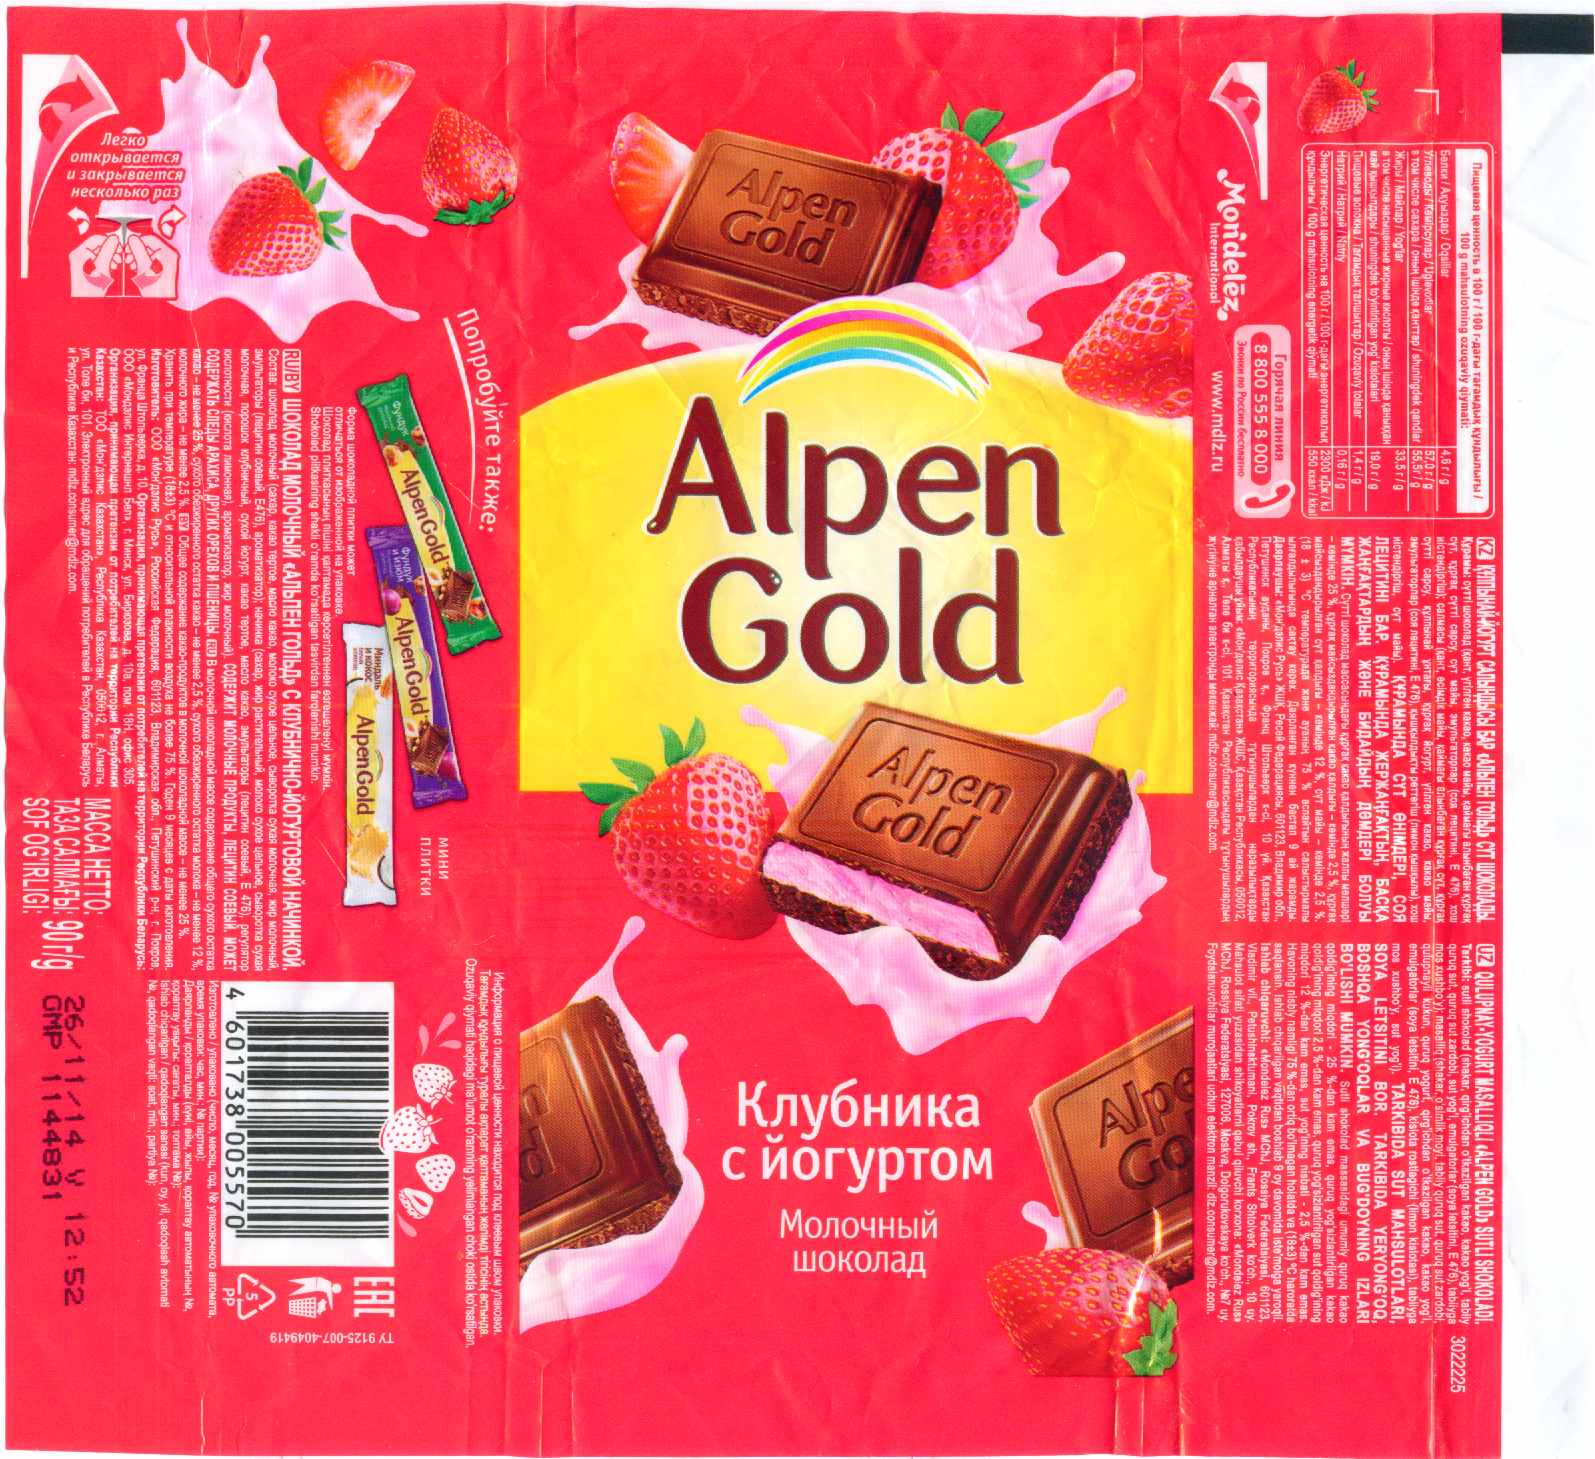 Альпен Гольд Двойной Шоколад